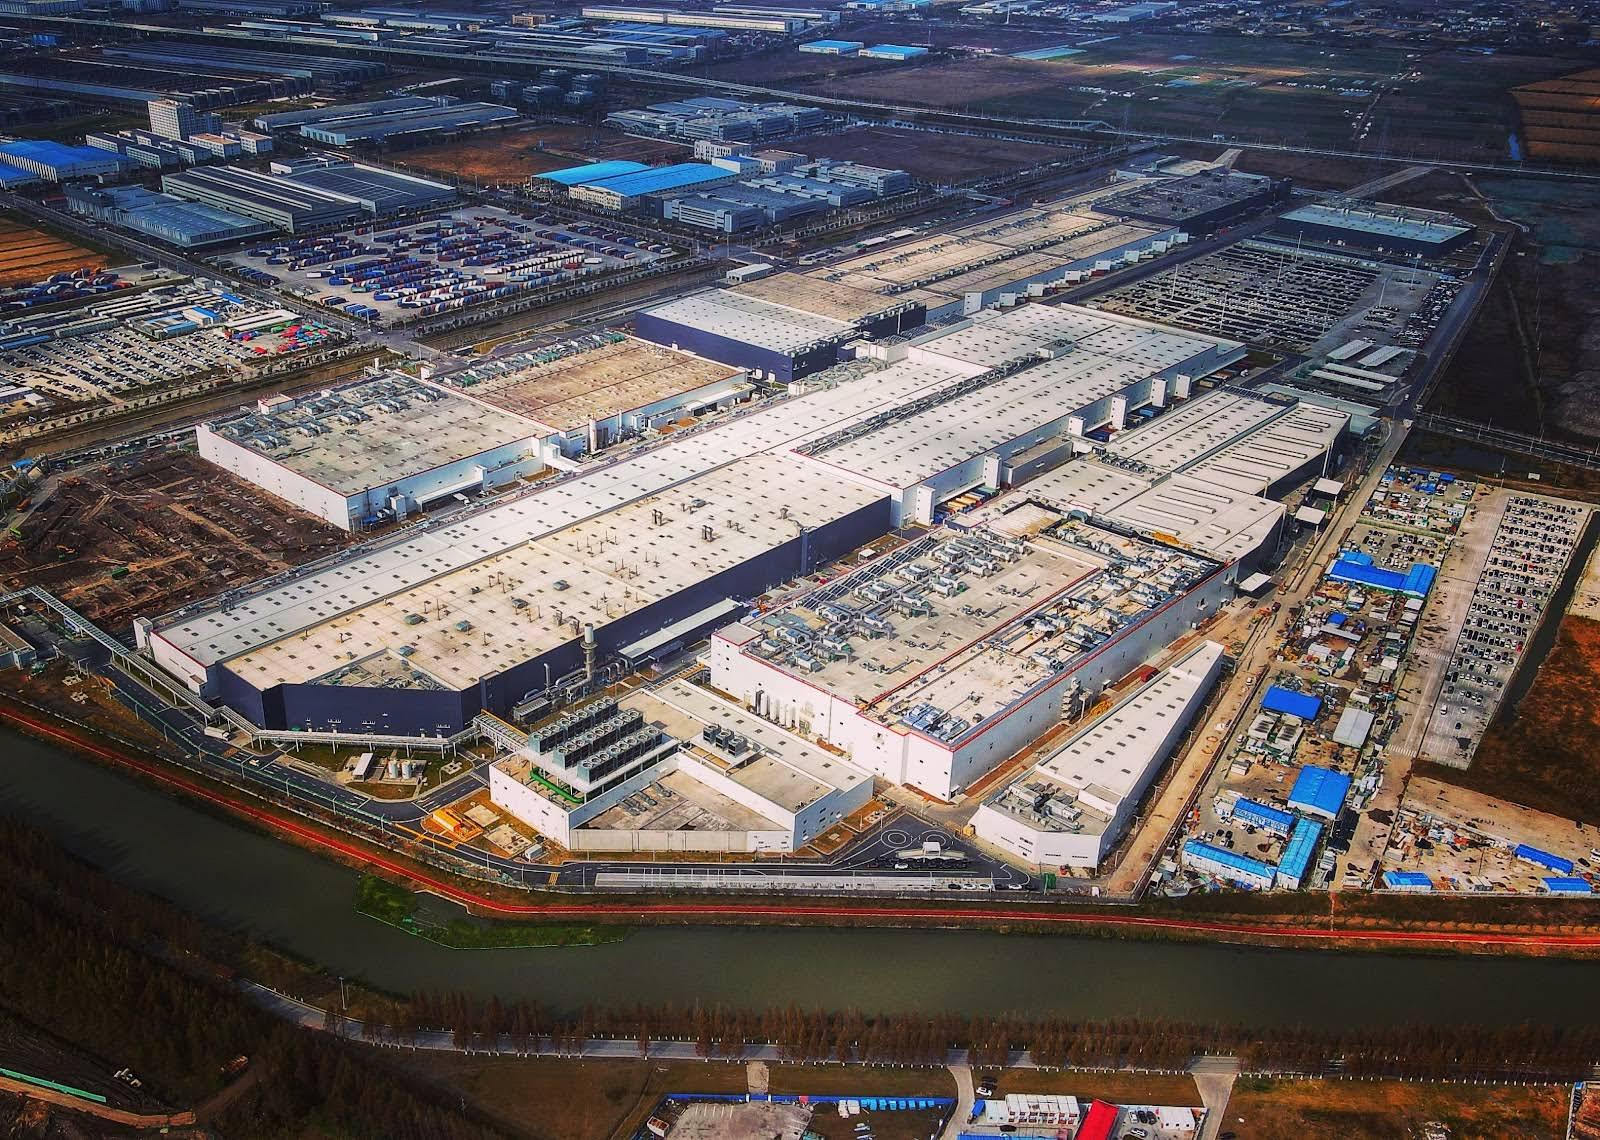 特斯拉上海超级工厂再加码扩建,将带动中国制造供应链腾飞